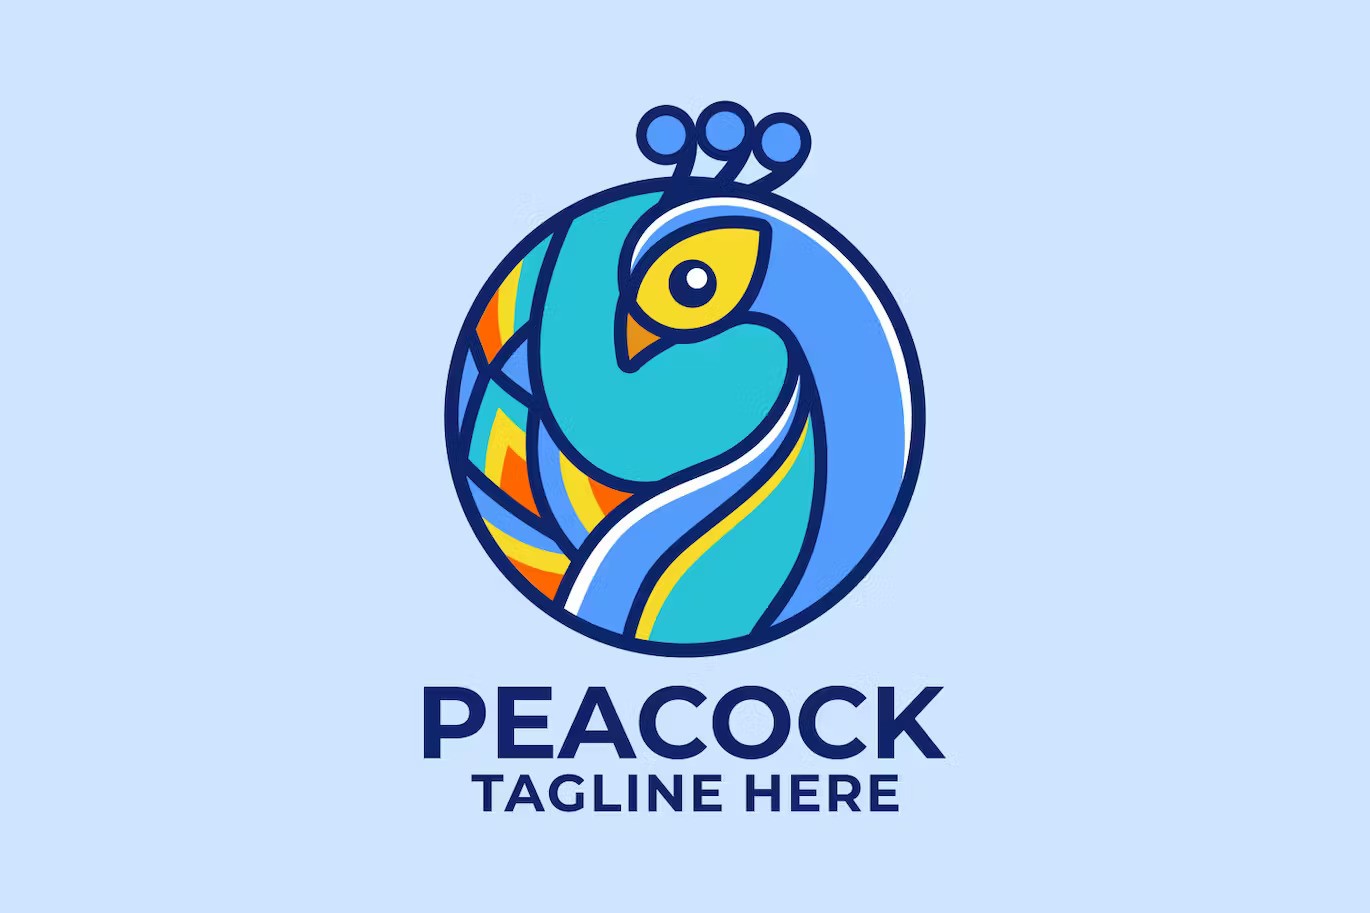 A peacock in circle logo design